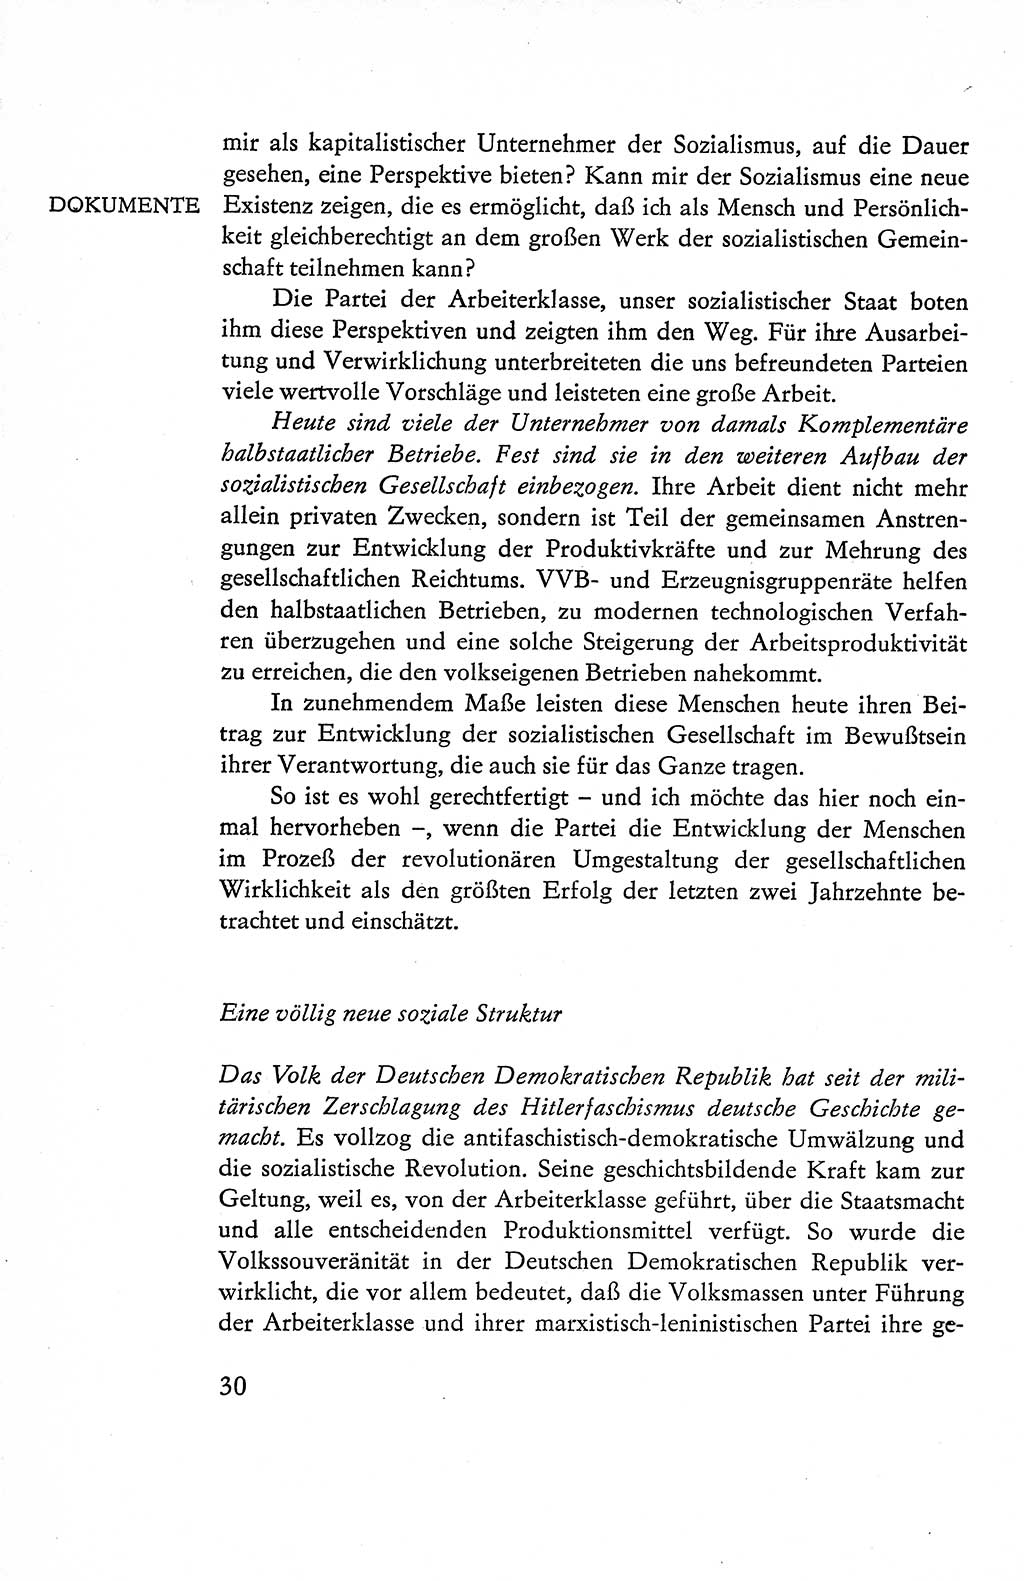 Verfassung der Deutschen Demokratischen Republik (DDR), Dokumente, Kommentar 1969, Band 1, Seite 30 (Verf. DDR Dok. Komm. 1969, Bd. 1, S. 30)